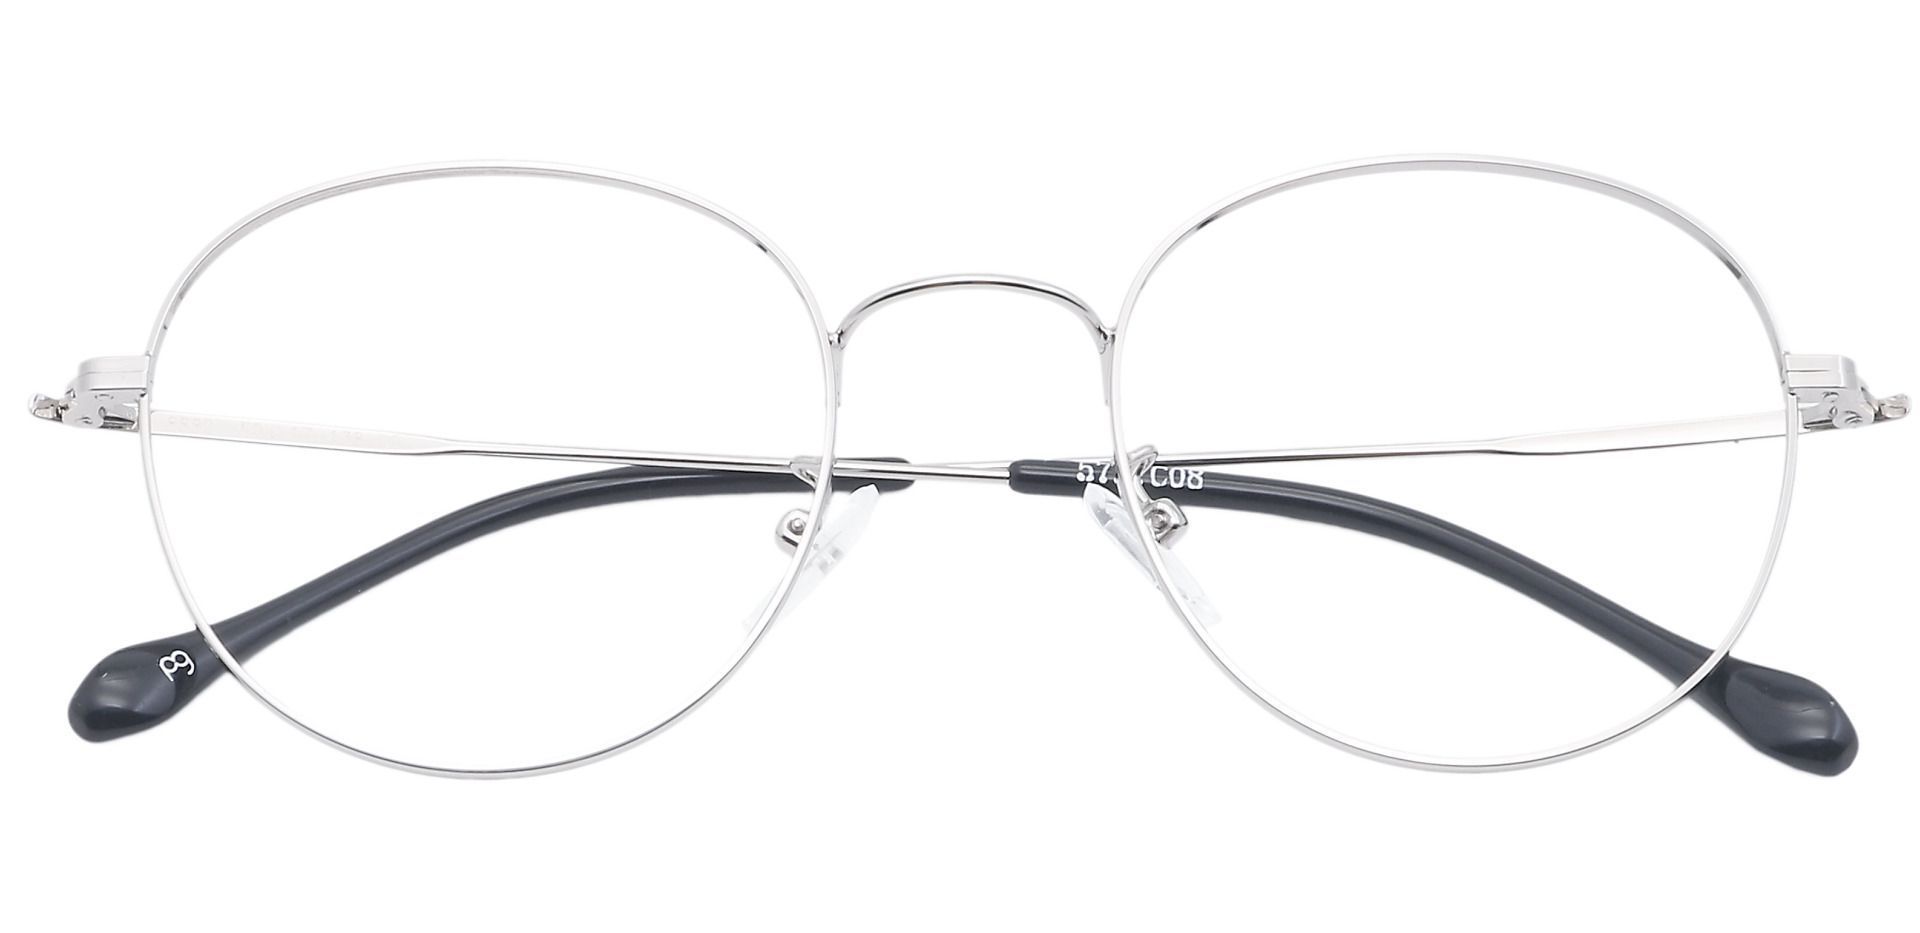 Miller Oval Eyeglasses Frame - Gray